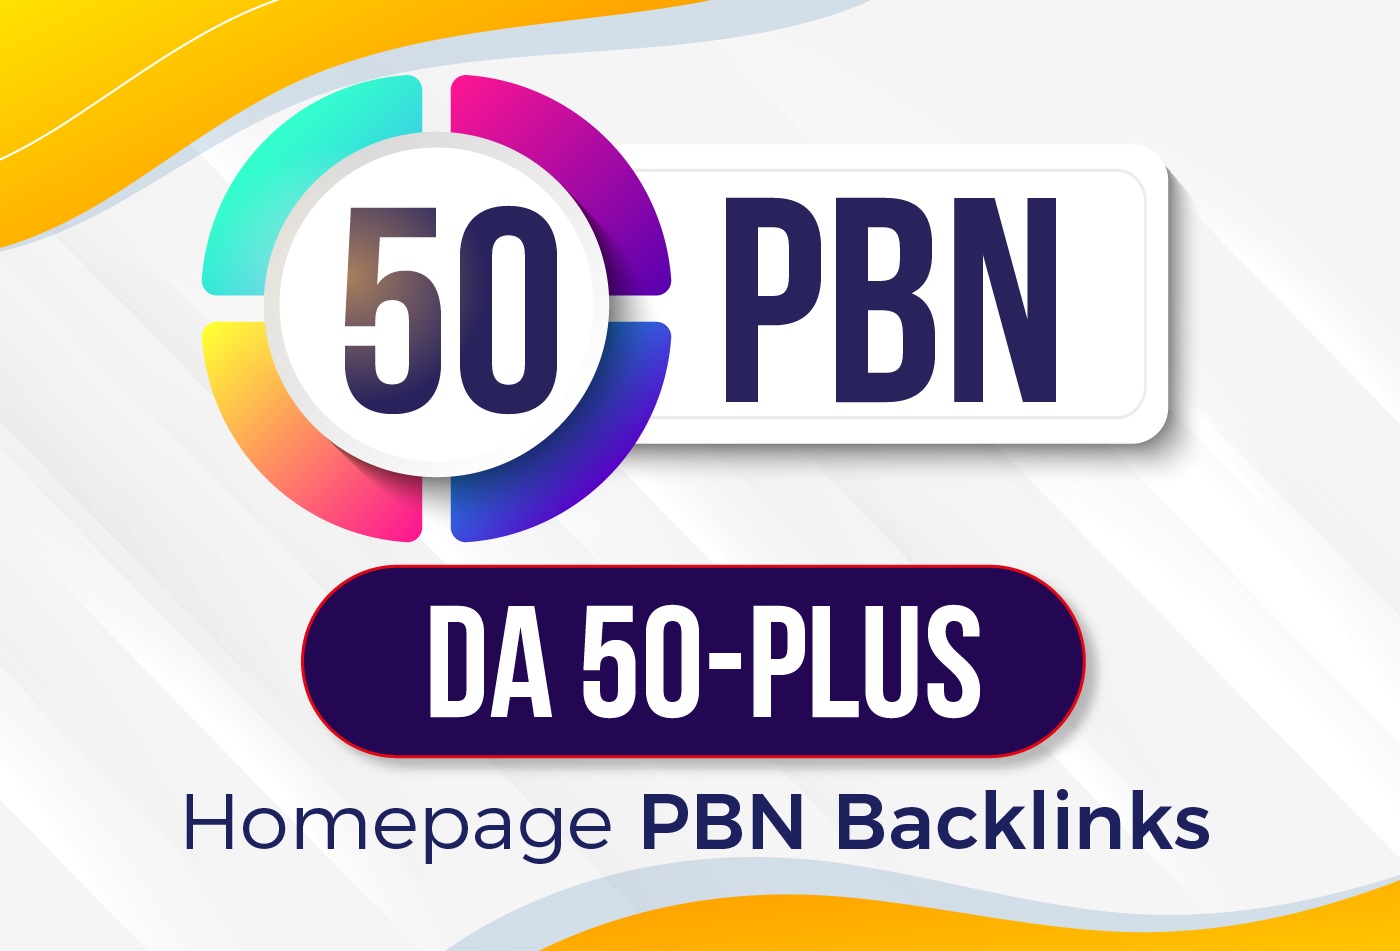 Build,All DA50+ High Quality 50 PBN Backlinks,To Website Improving